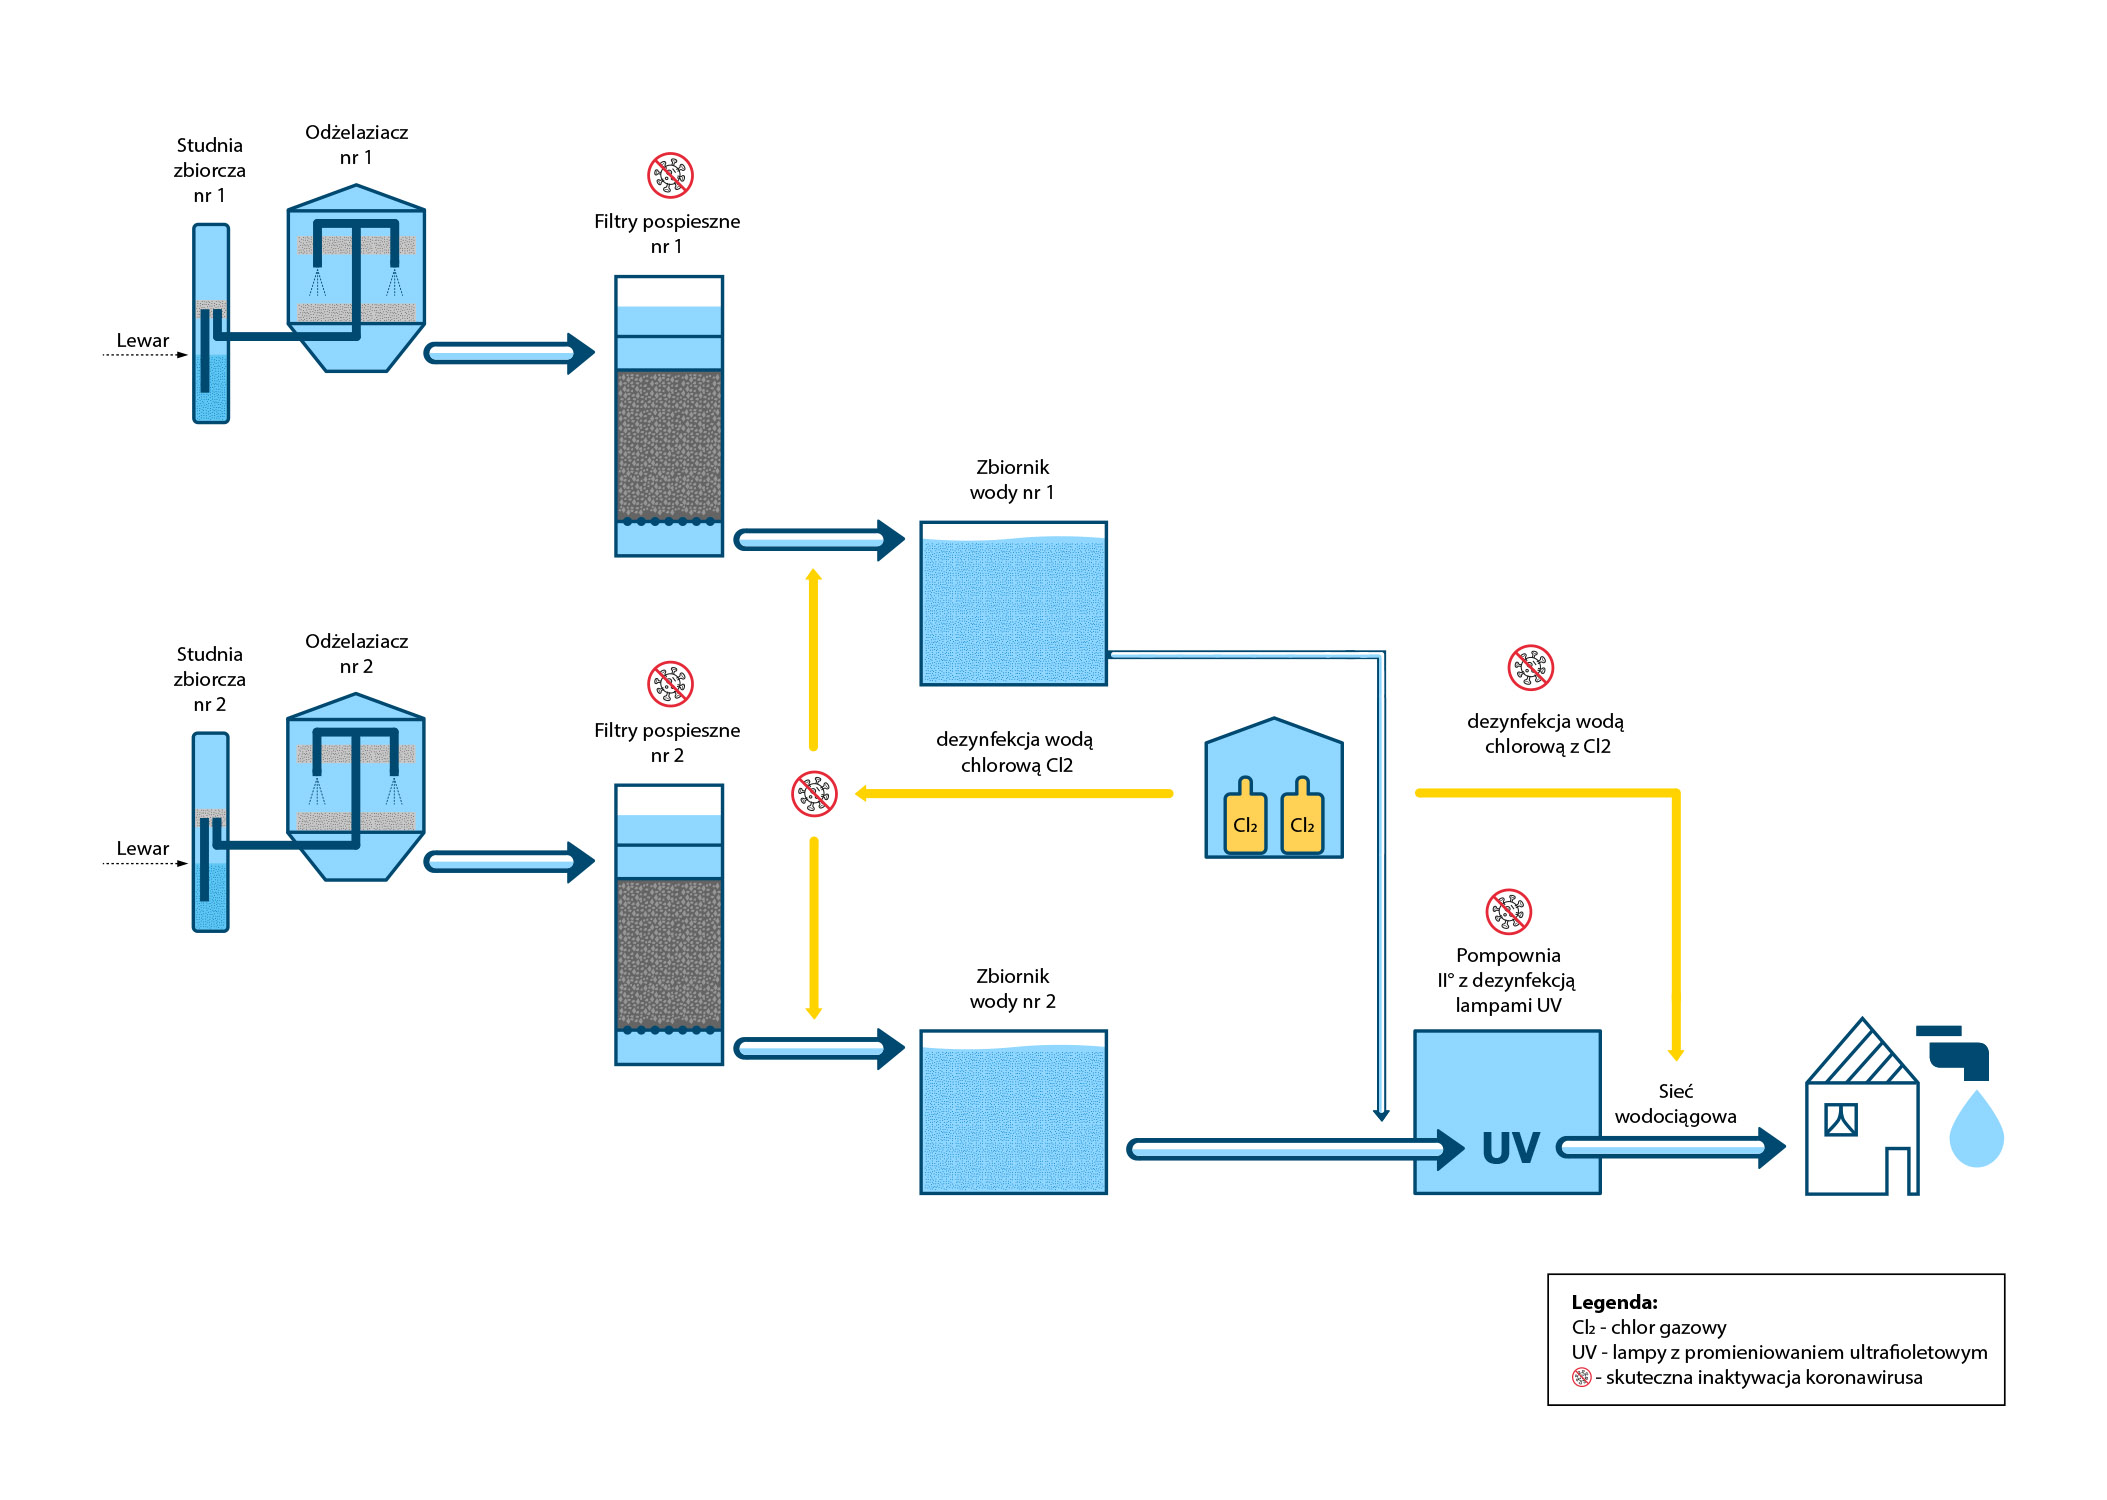 Grafika przedstawia schemat technologiczny dotyczący Stacji Uzdatniania Wody WIśniowa